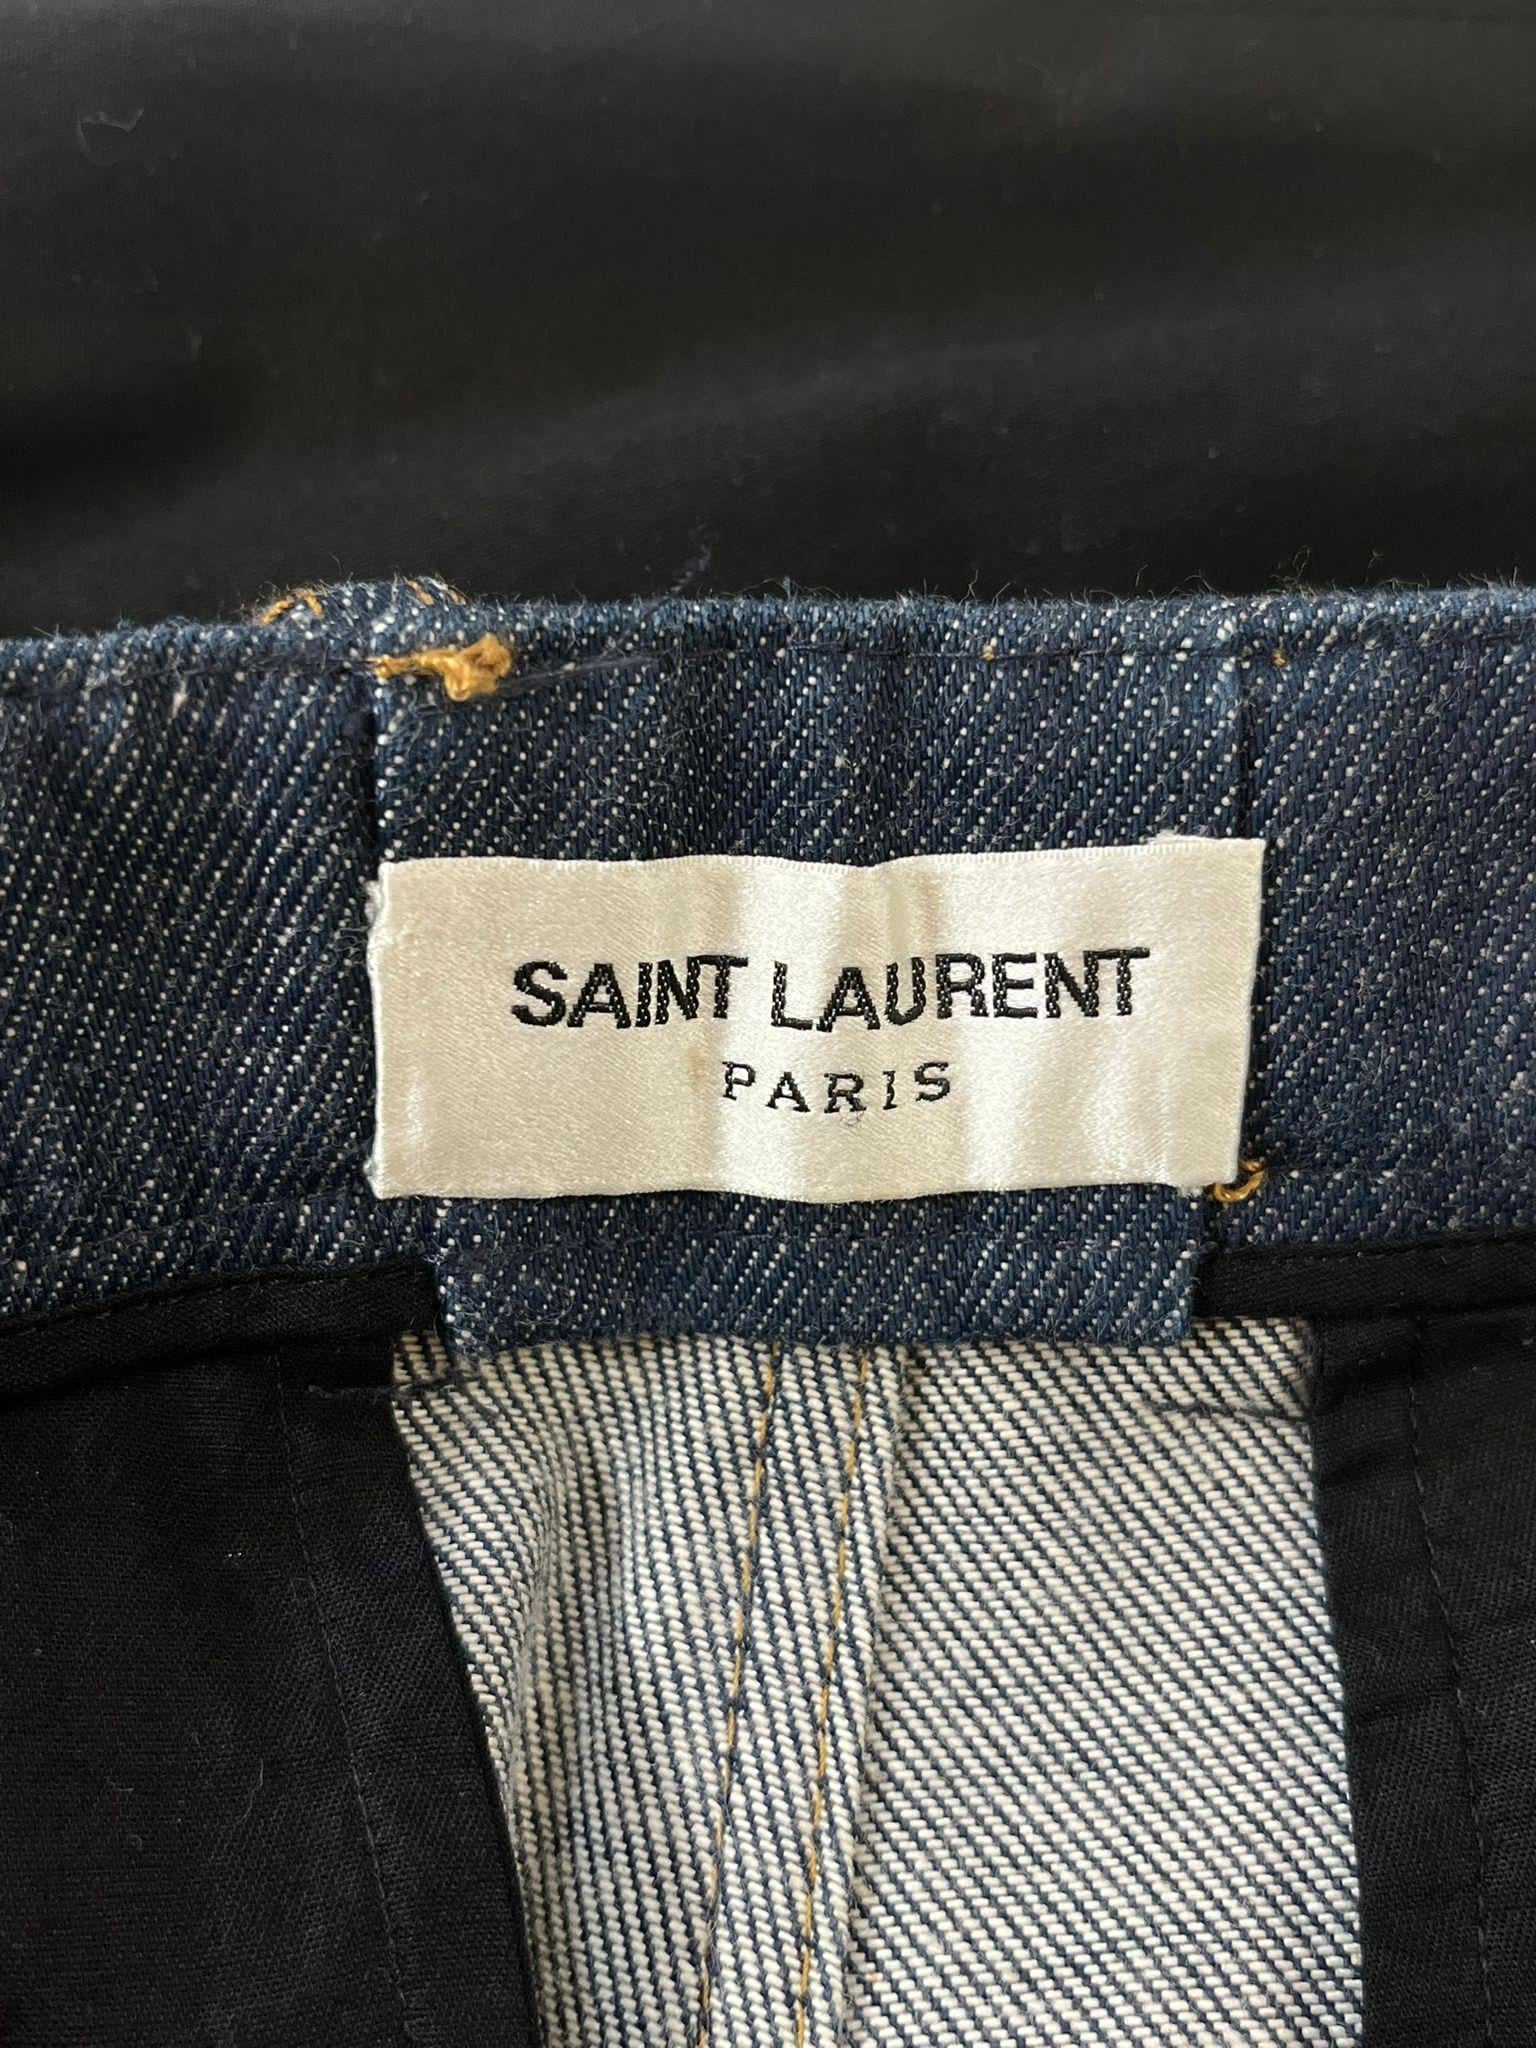 Saint Laurent Denim Jacket & Trousers For Sale 2